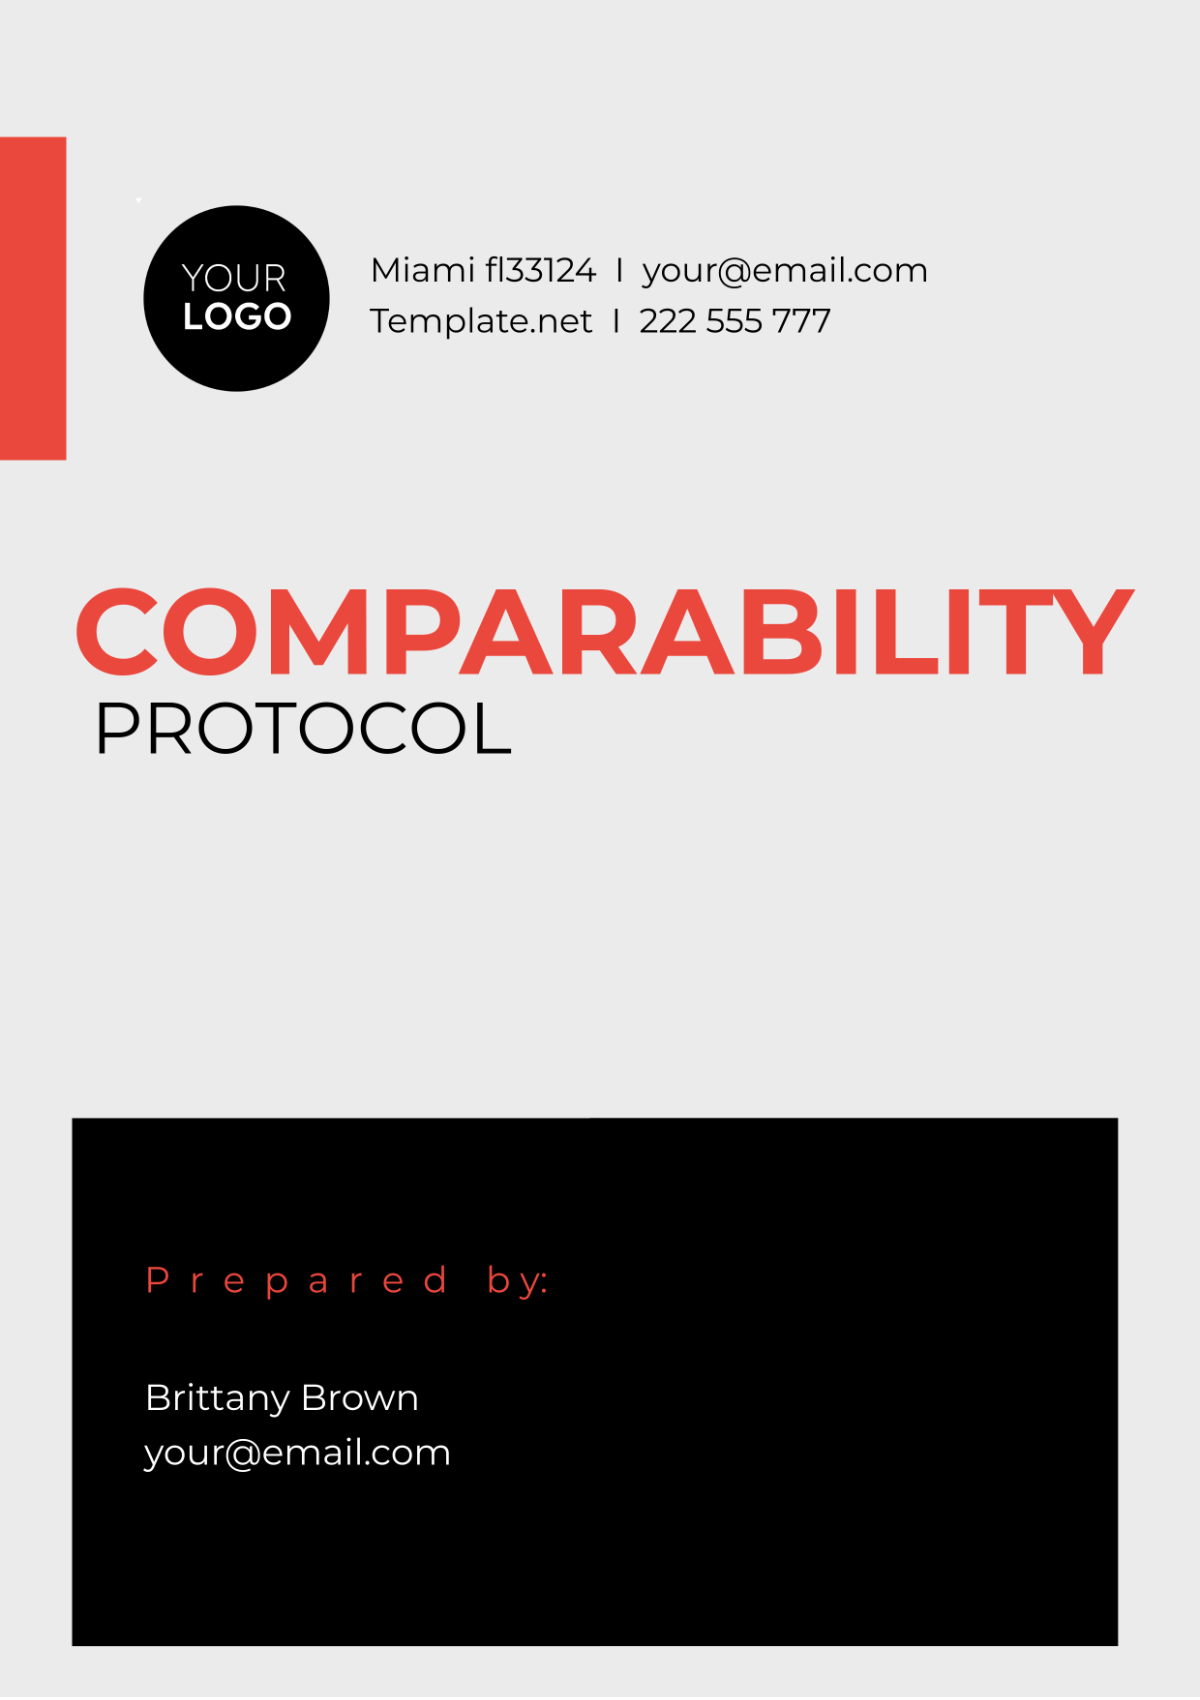 Comparability Protocol Template